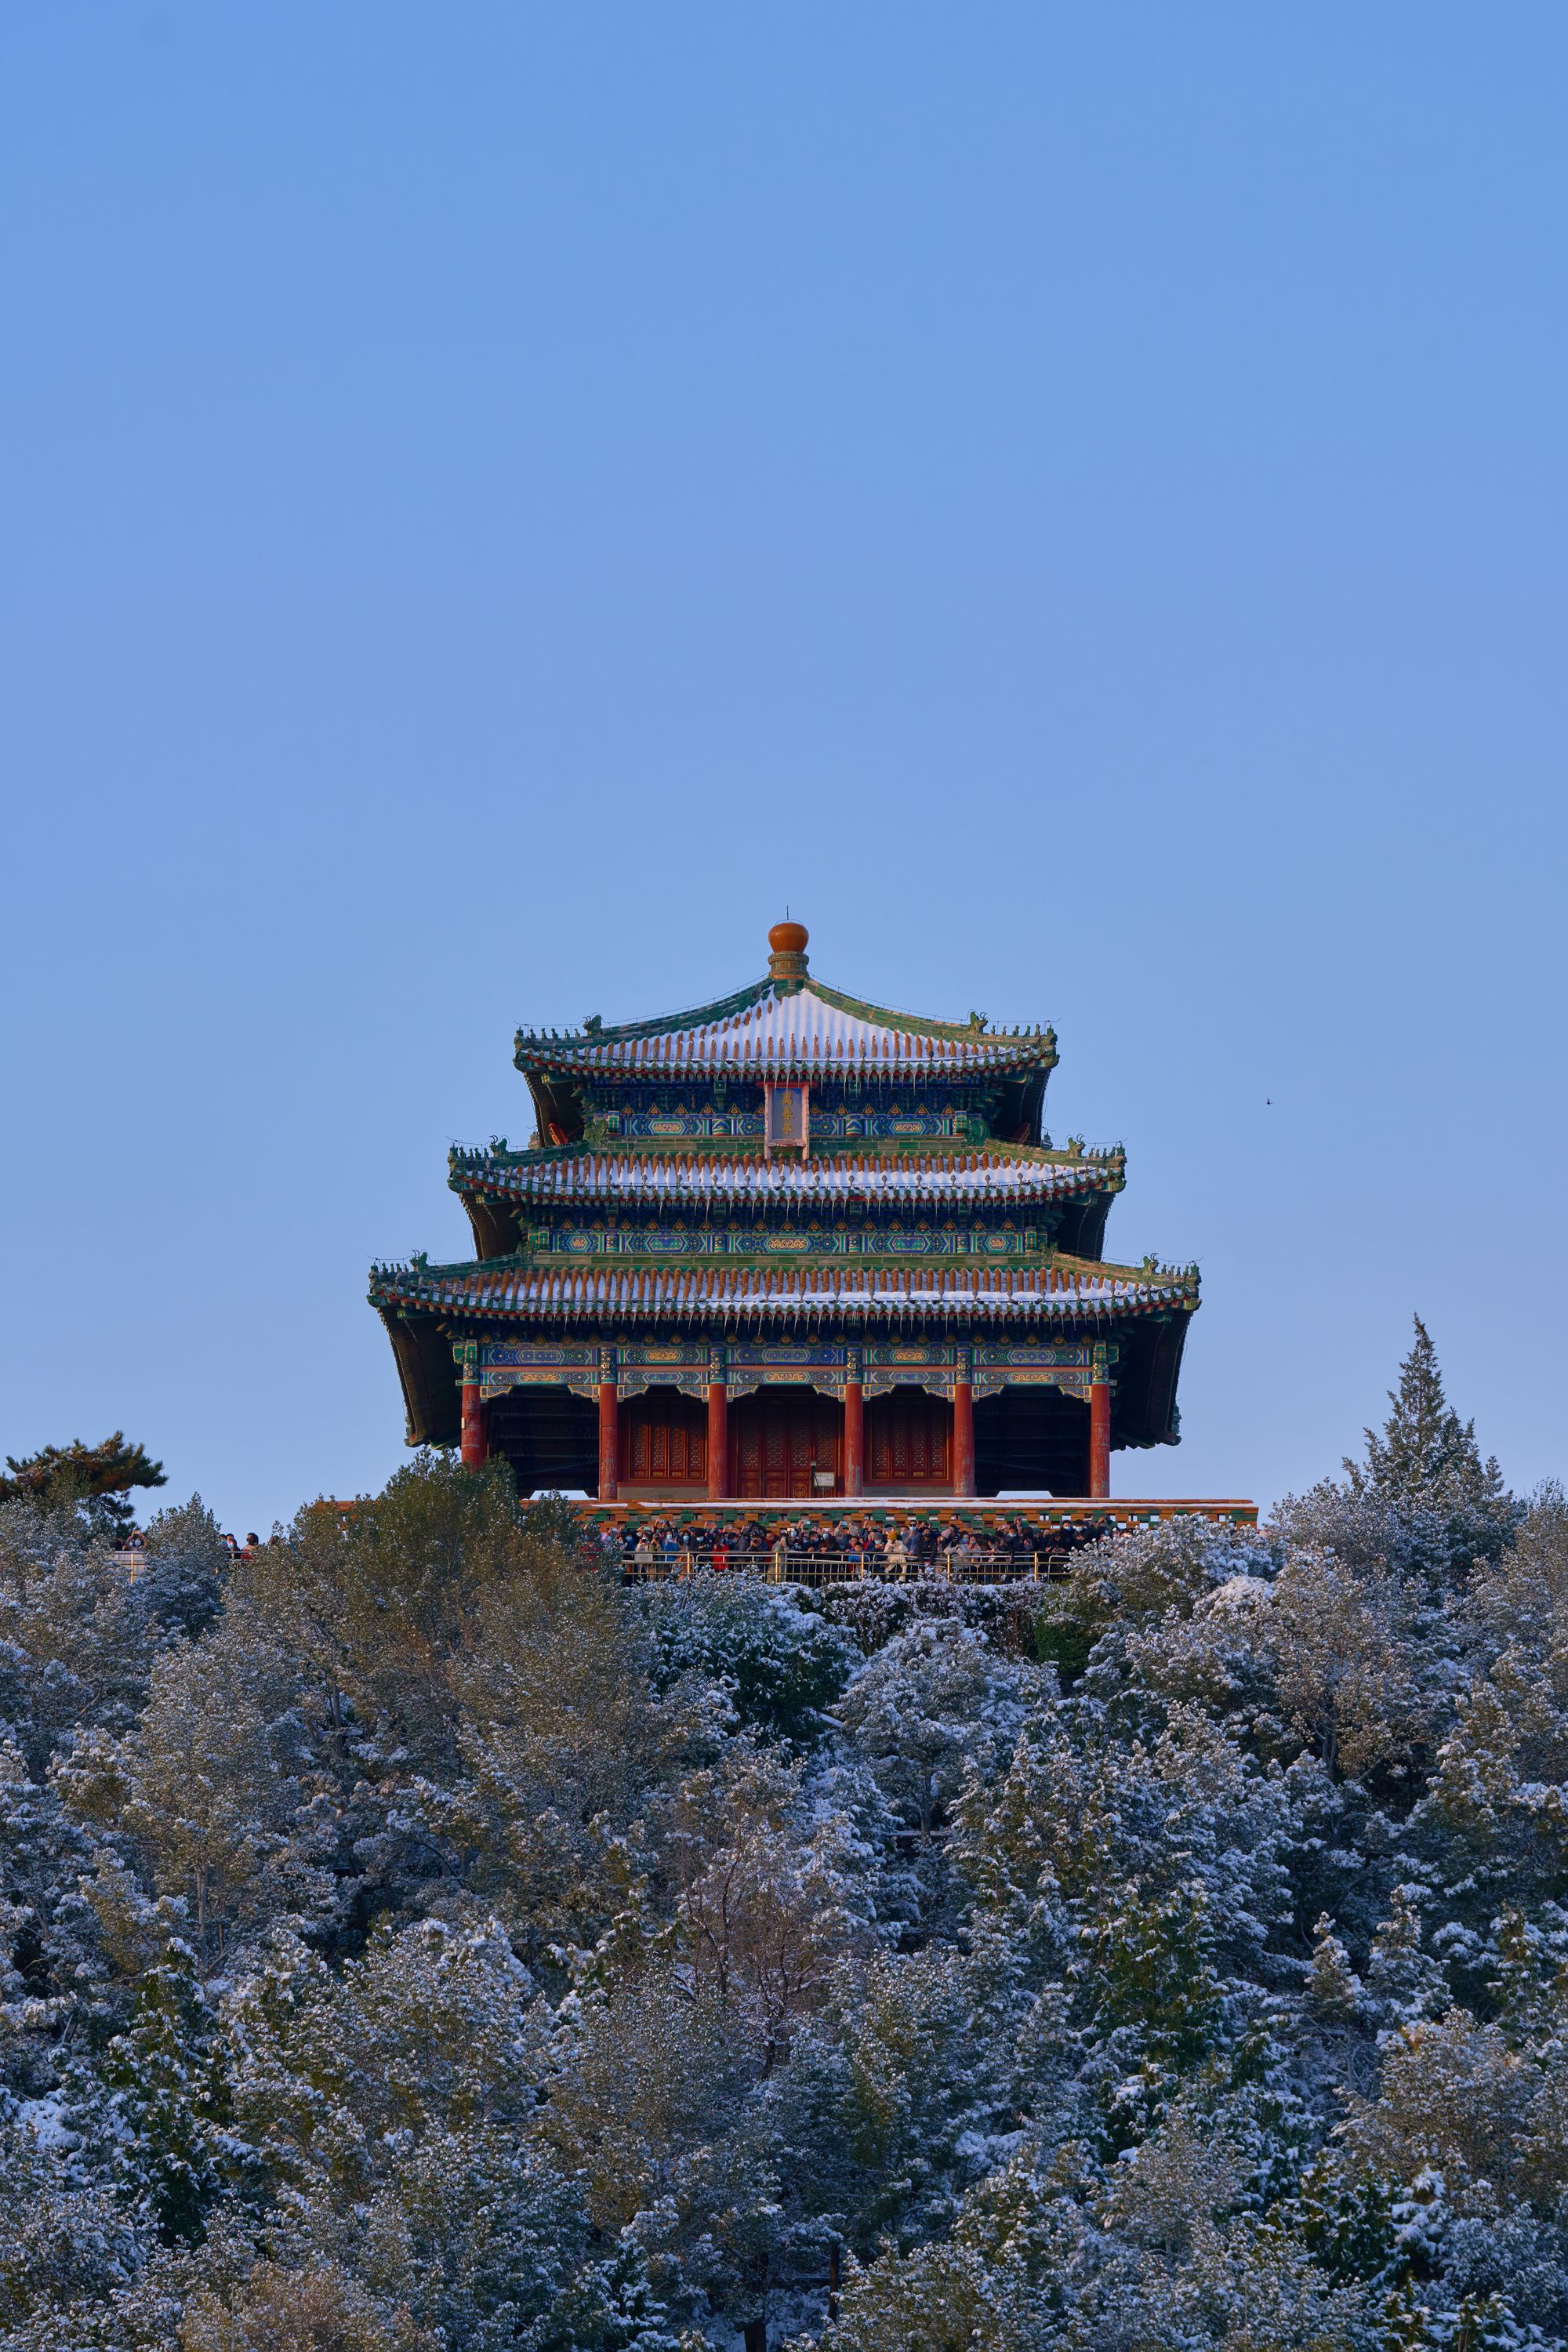  北京，故宫，132mm F8 1/160 ISO100，Sony A7R4a，2021年11月7日